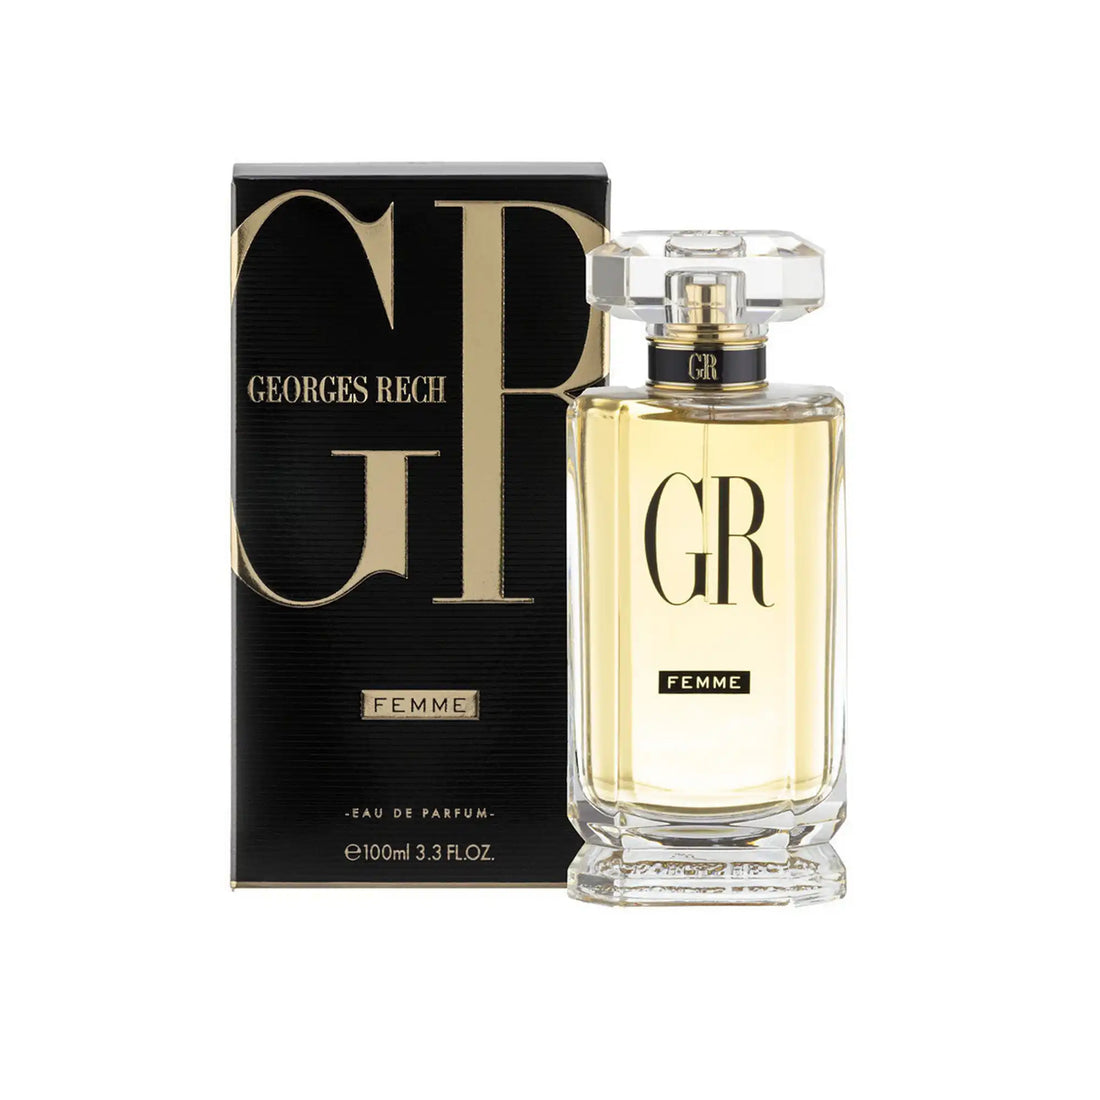 Georges Rech Femme Eau de Parfum Spray 100Ml Packaging